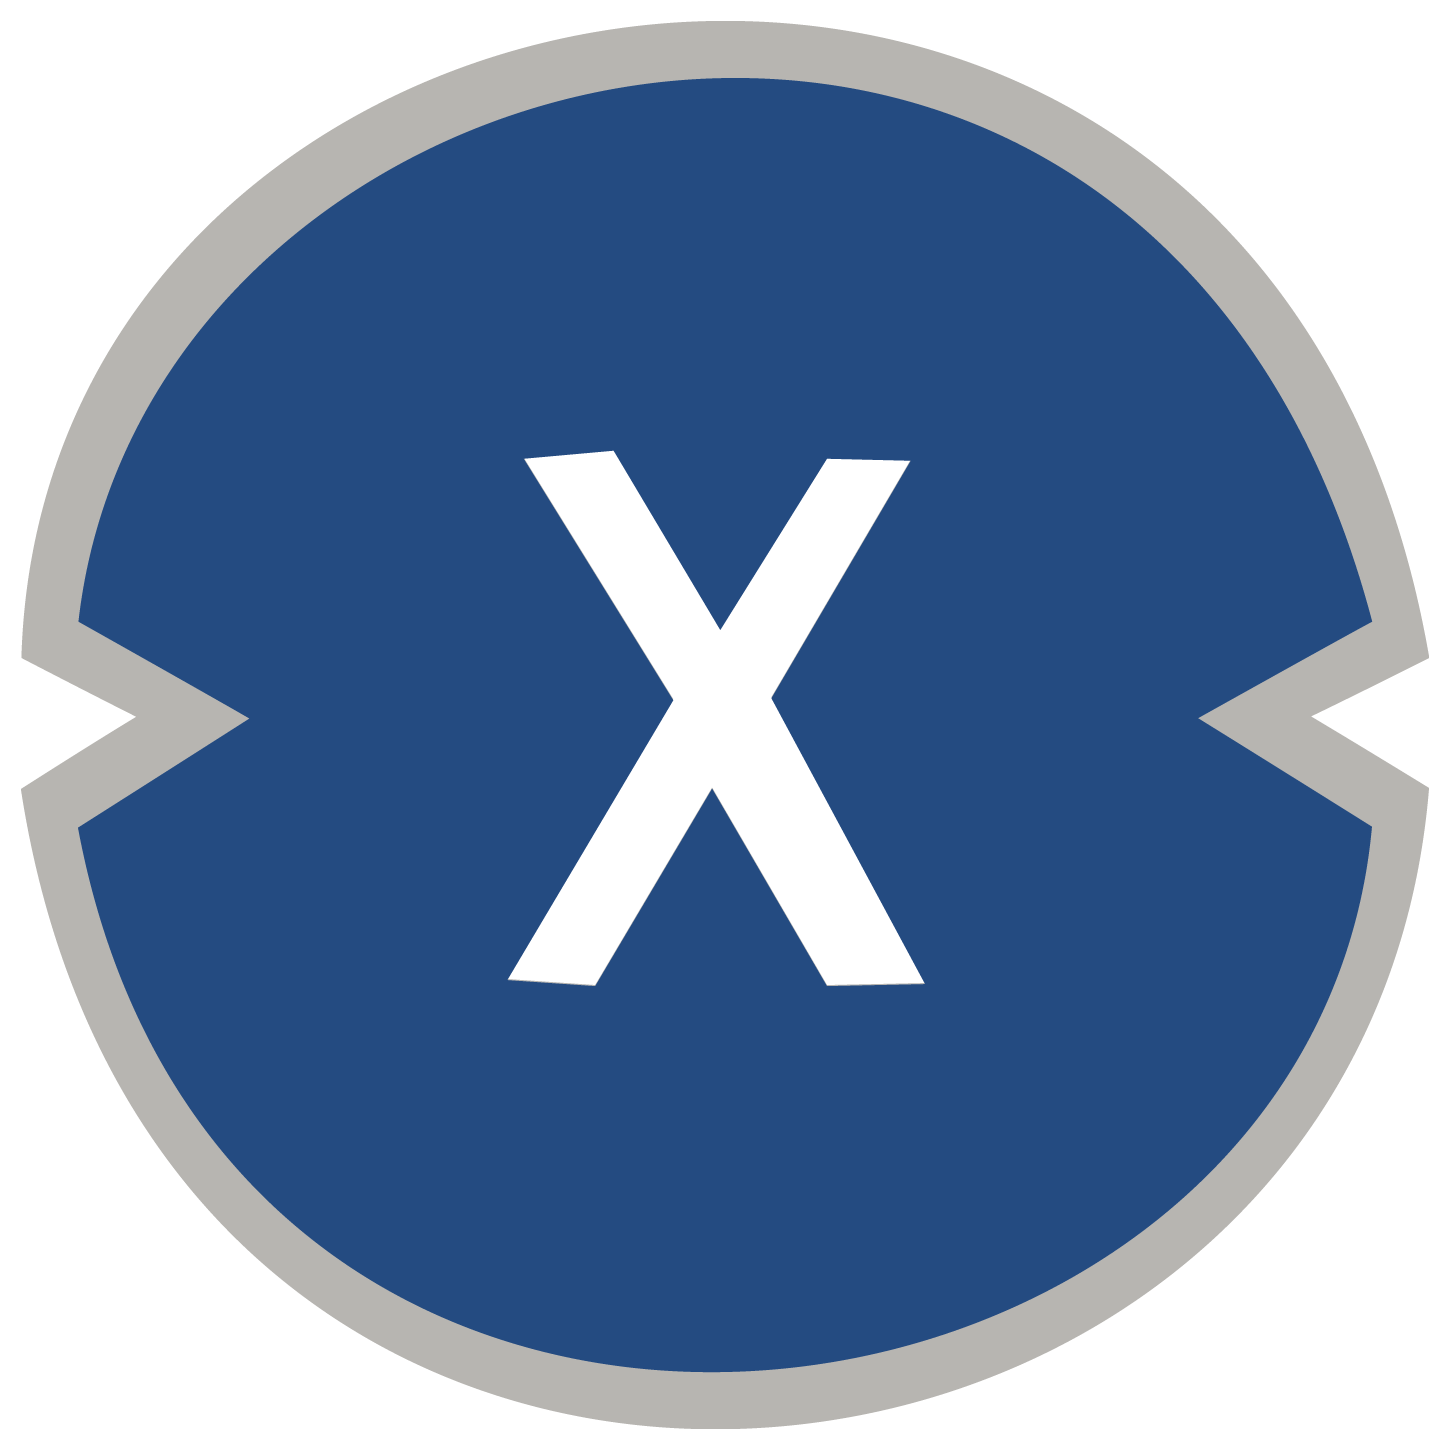 XinFin XDC Network